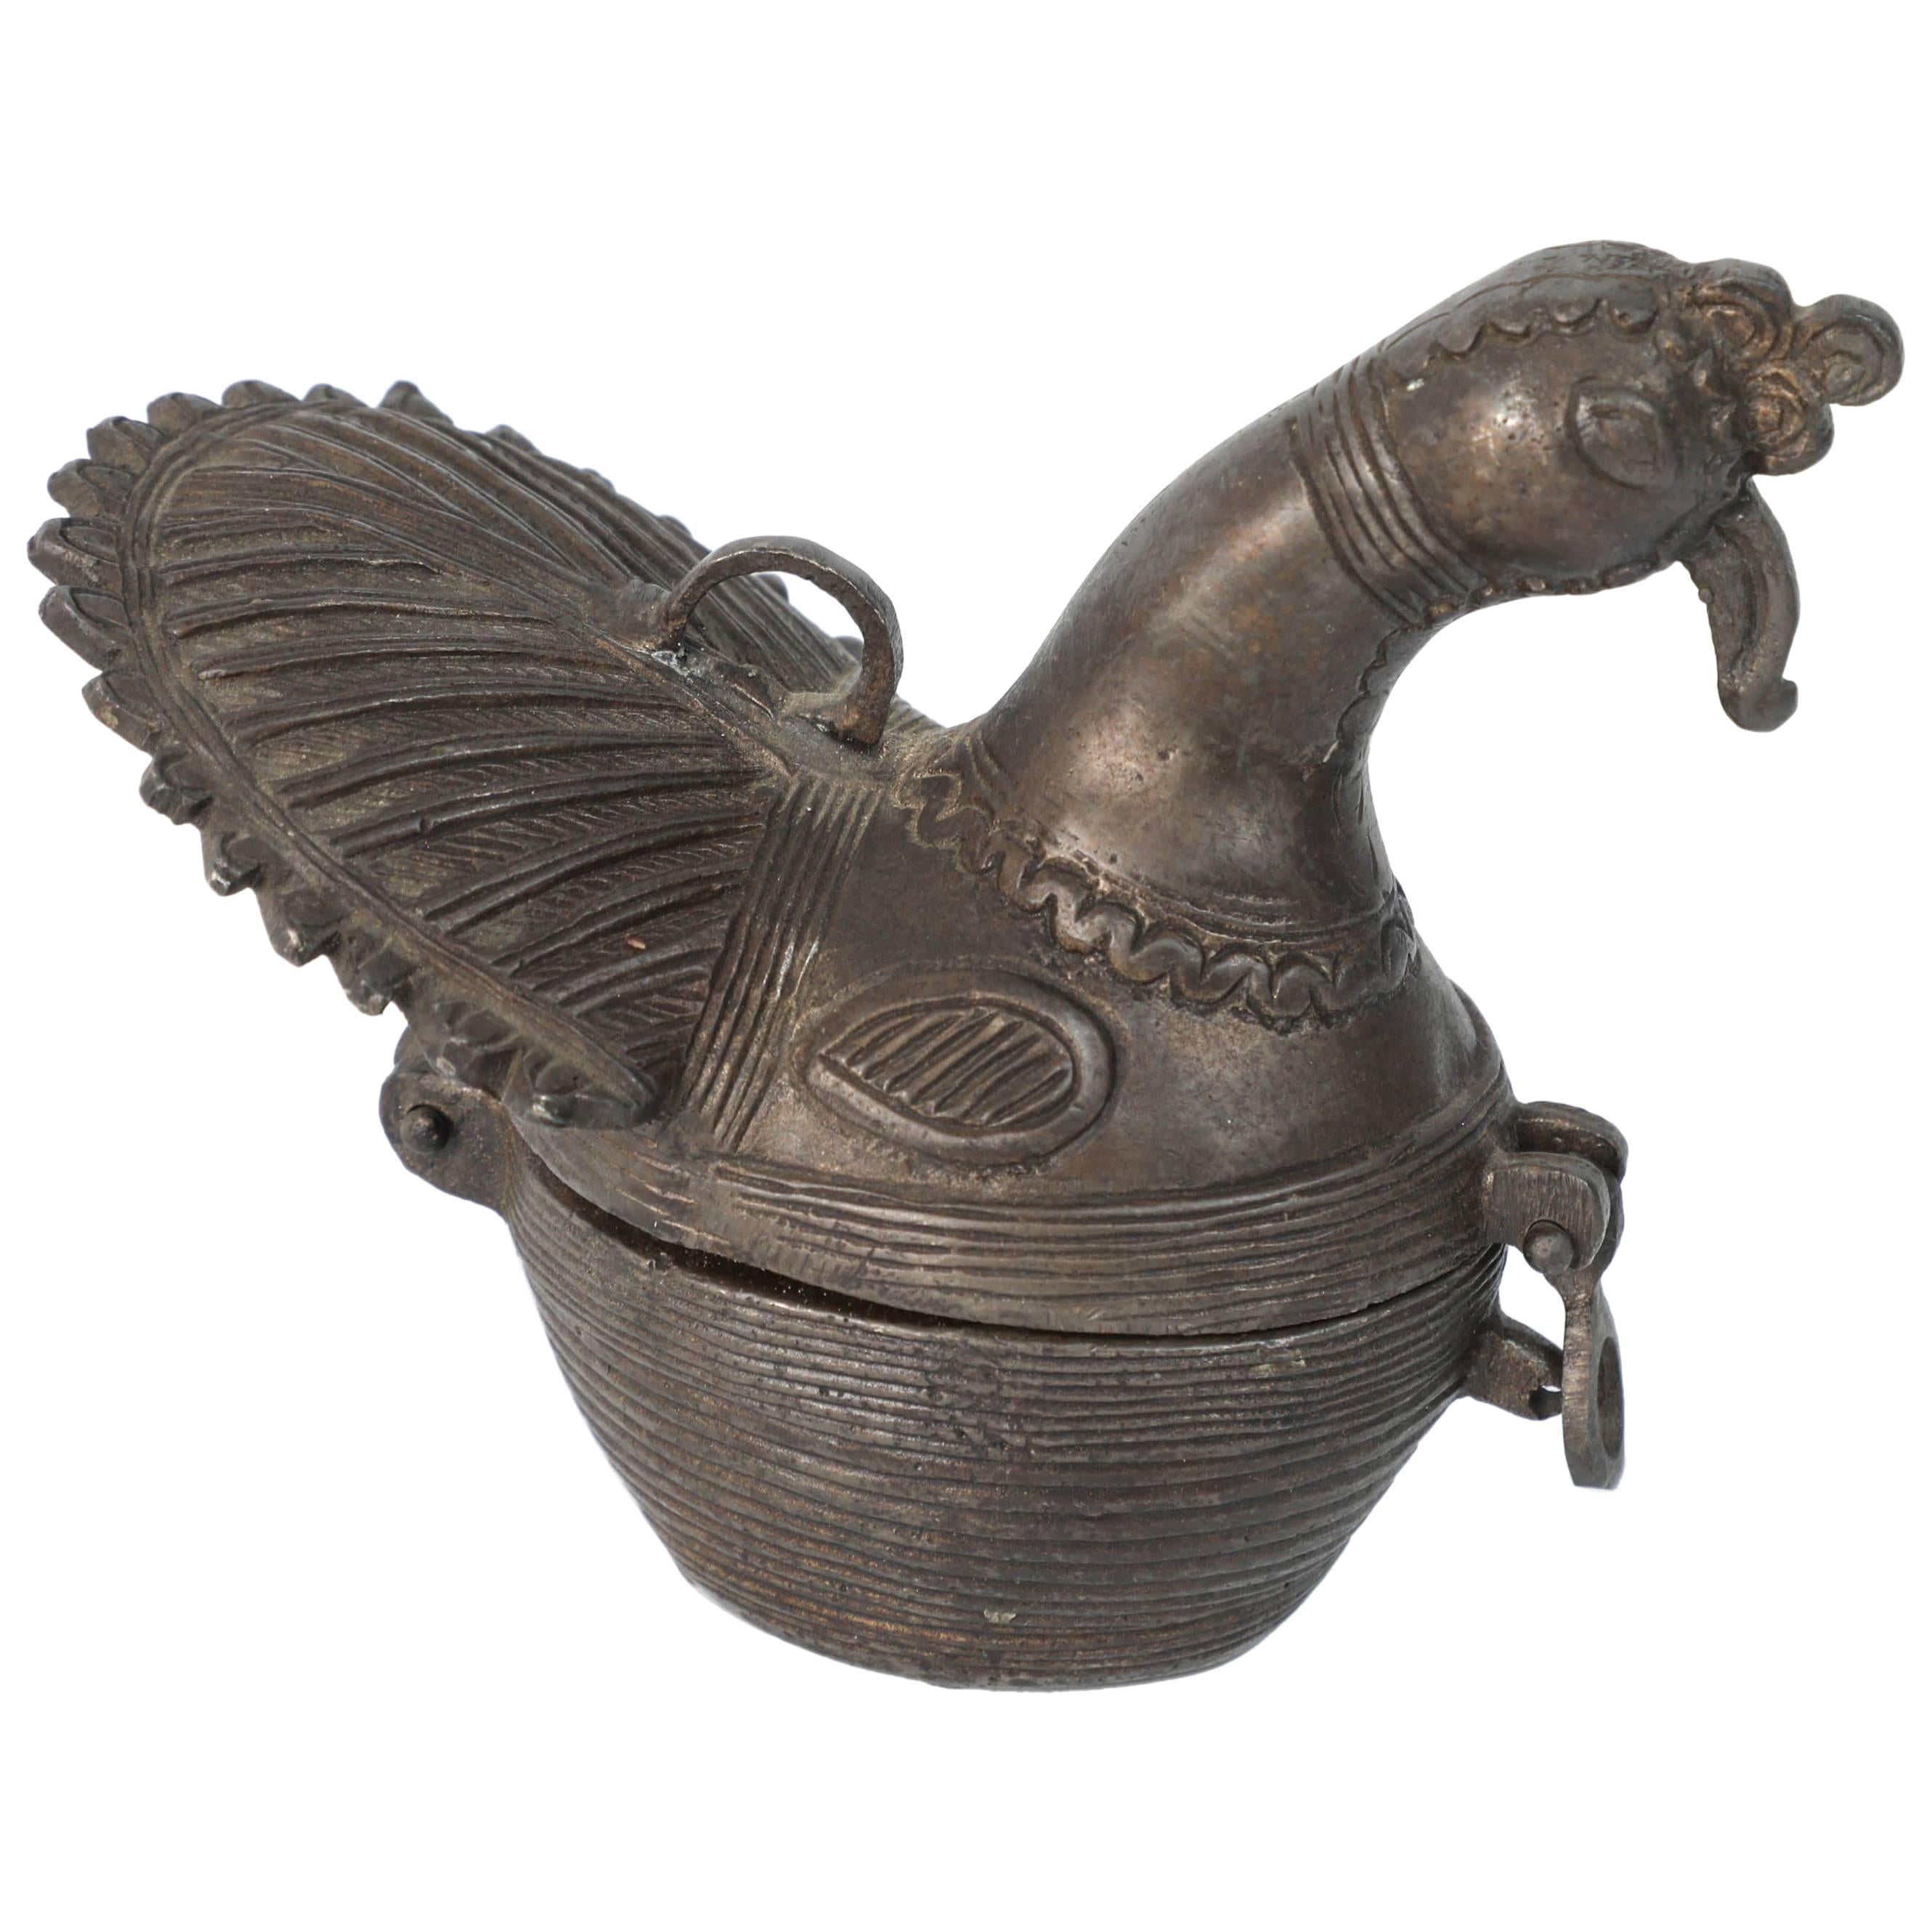 Il s'agit d'une sculpture ancienne en bronze patiné représentant un paon de forme stylisée. 
Utilisée comme boîte à bétel ou à opium de tabac.
Réalisé selon le procédé traditionnel de la 